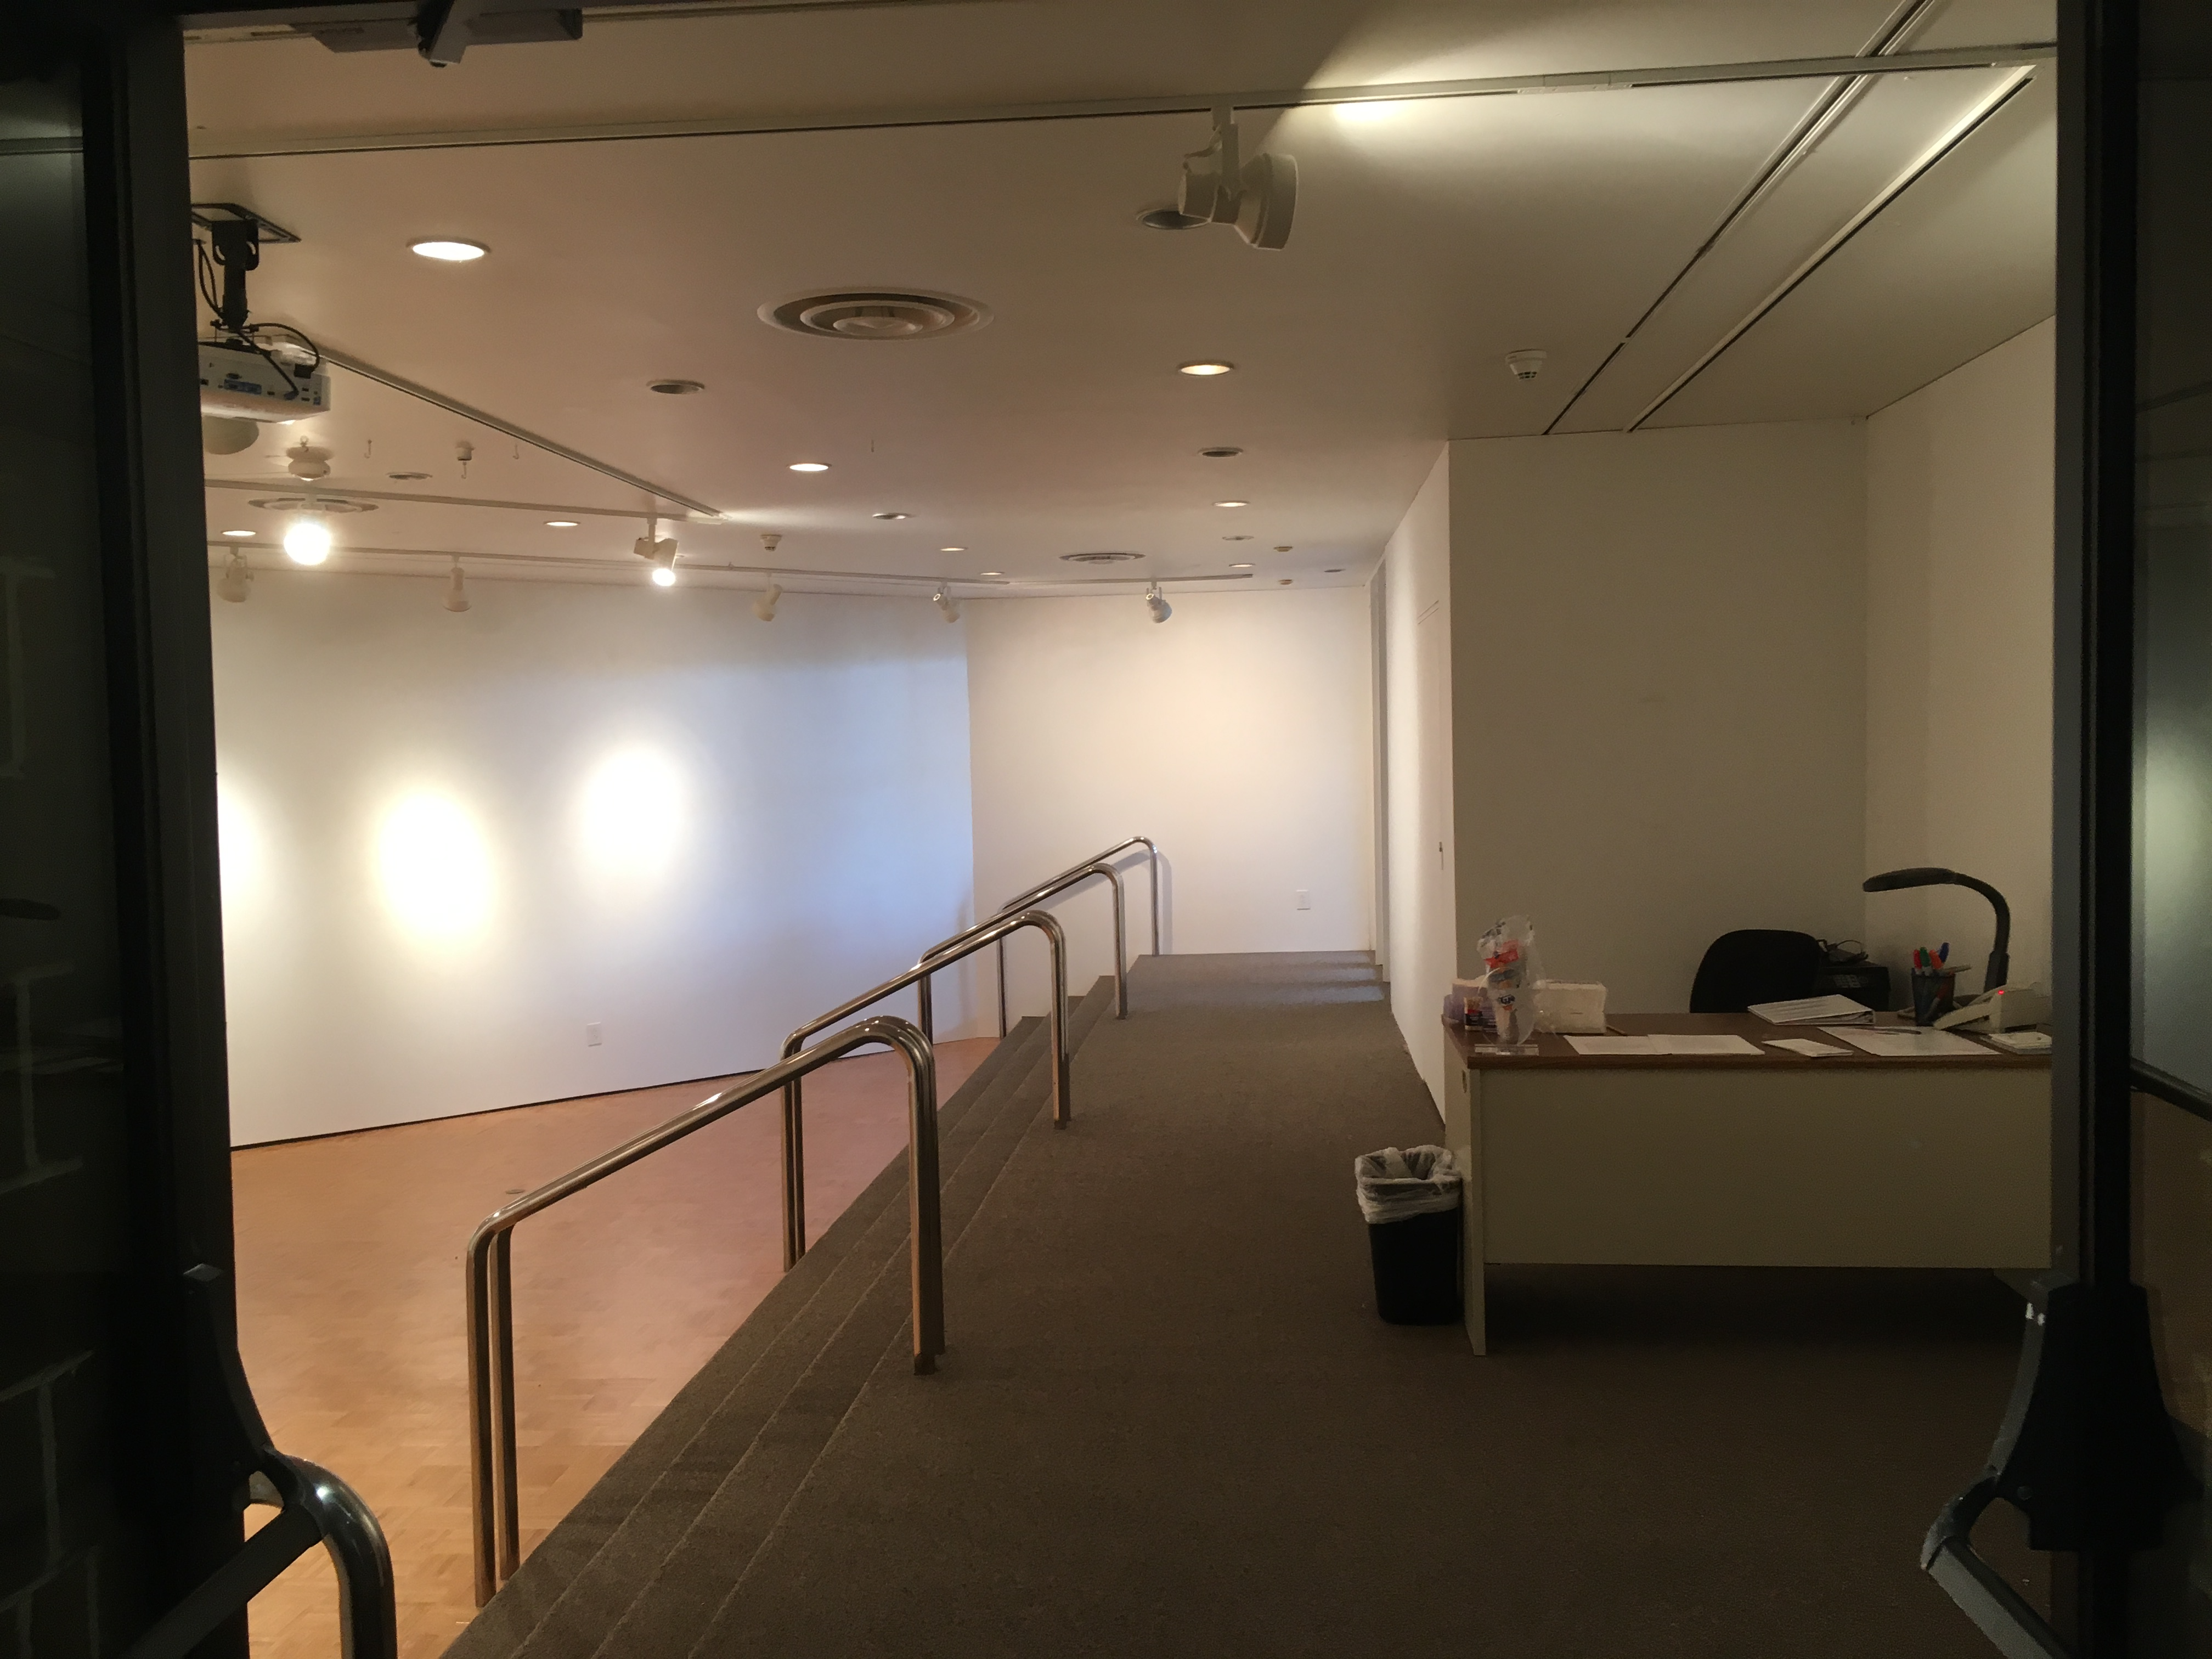 Empty Hartnett Gallery from inside the entrance